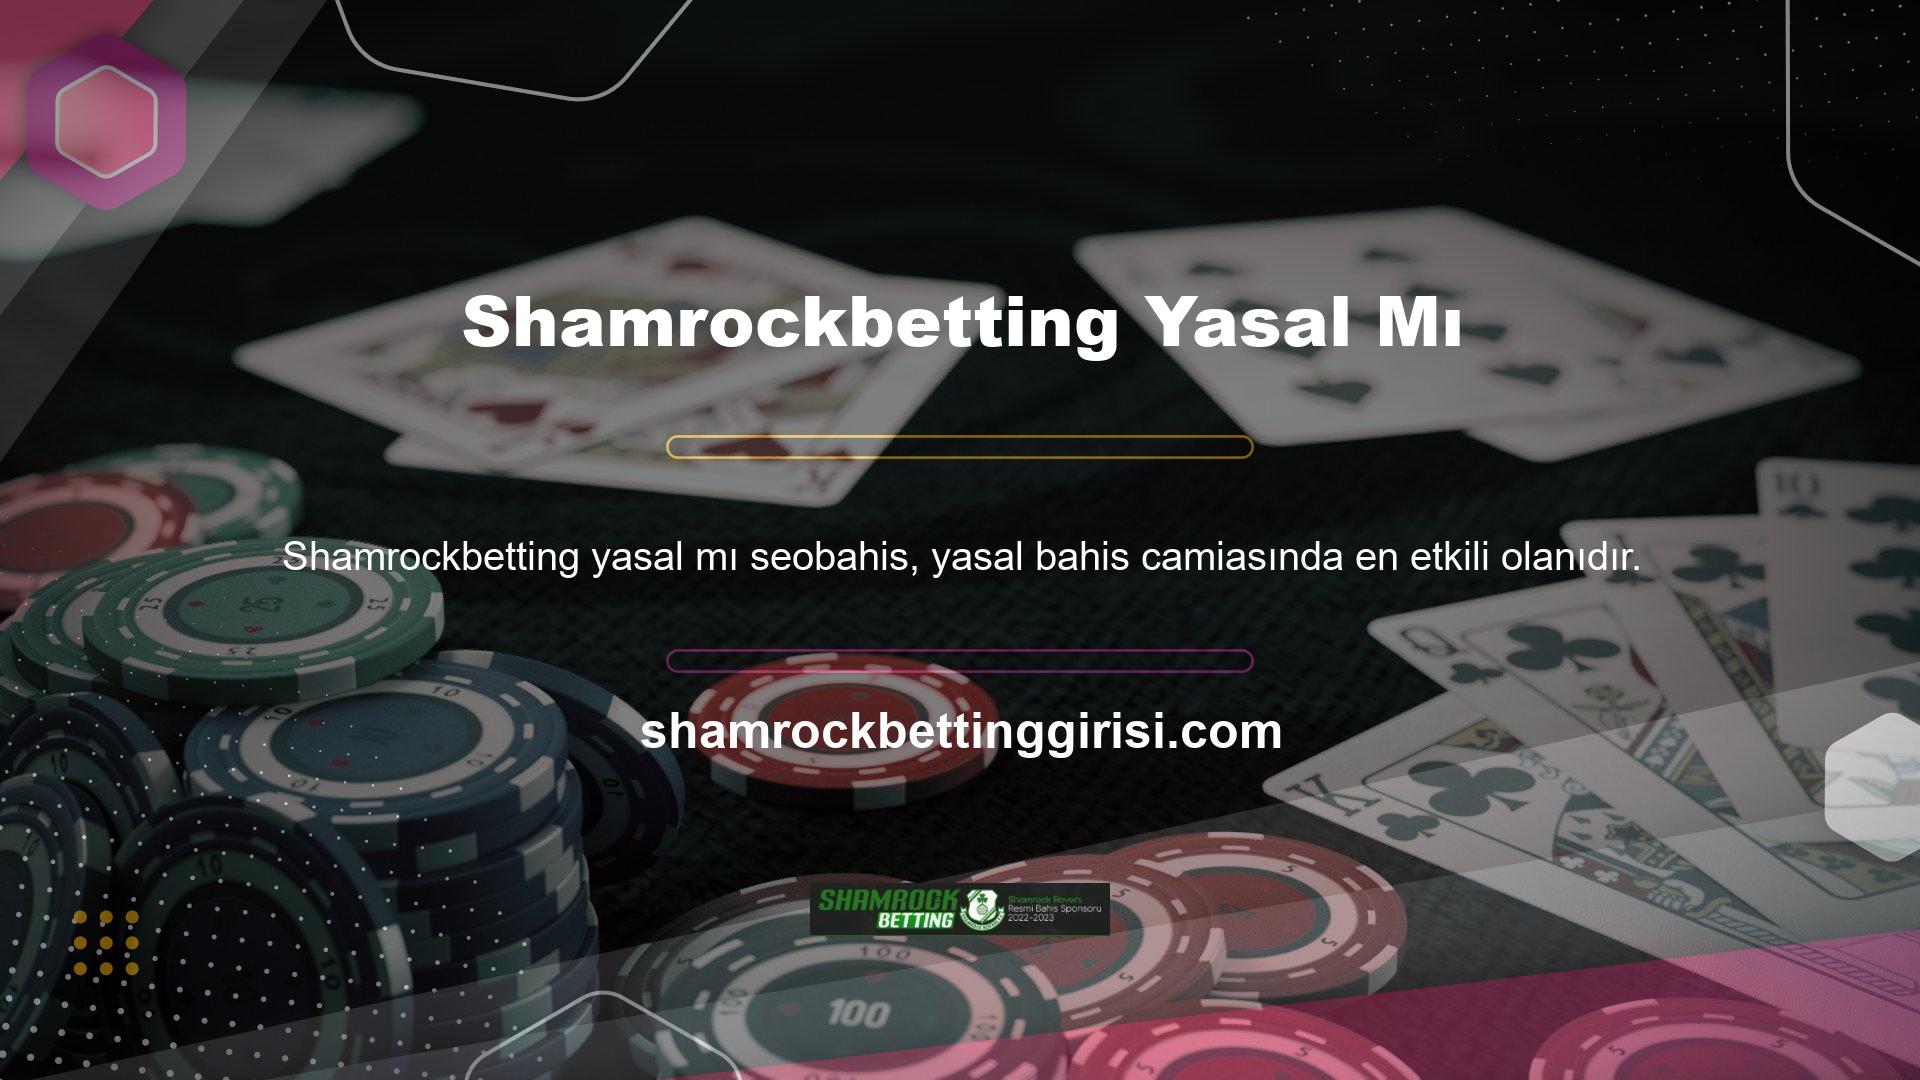 Düşük ücretler, (Türk Lirası cinsinden) gelişmiş para yatırma hizmeti, premium satranç ve binlerce slotlu oyun oranları ile Shamrockbetting, çevrimiçi casino hizmetleri de sunuyor